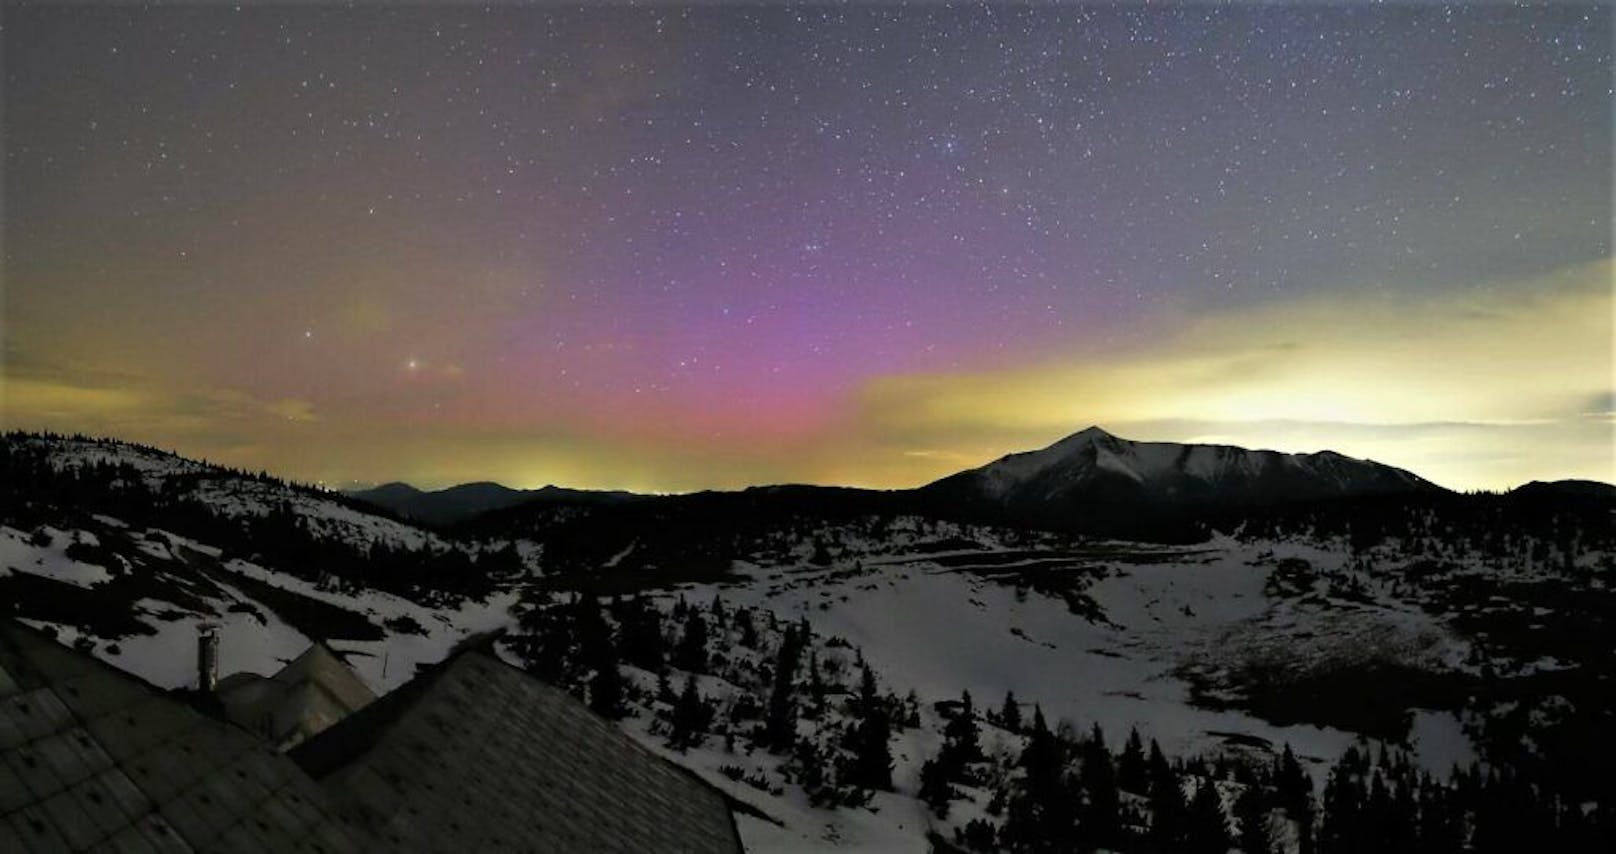 Webcam-Bilder zeigen imposante Nordlichter über Rax